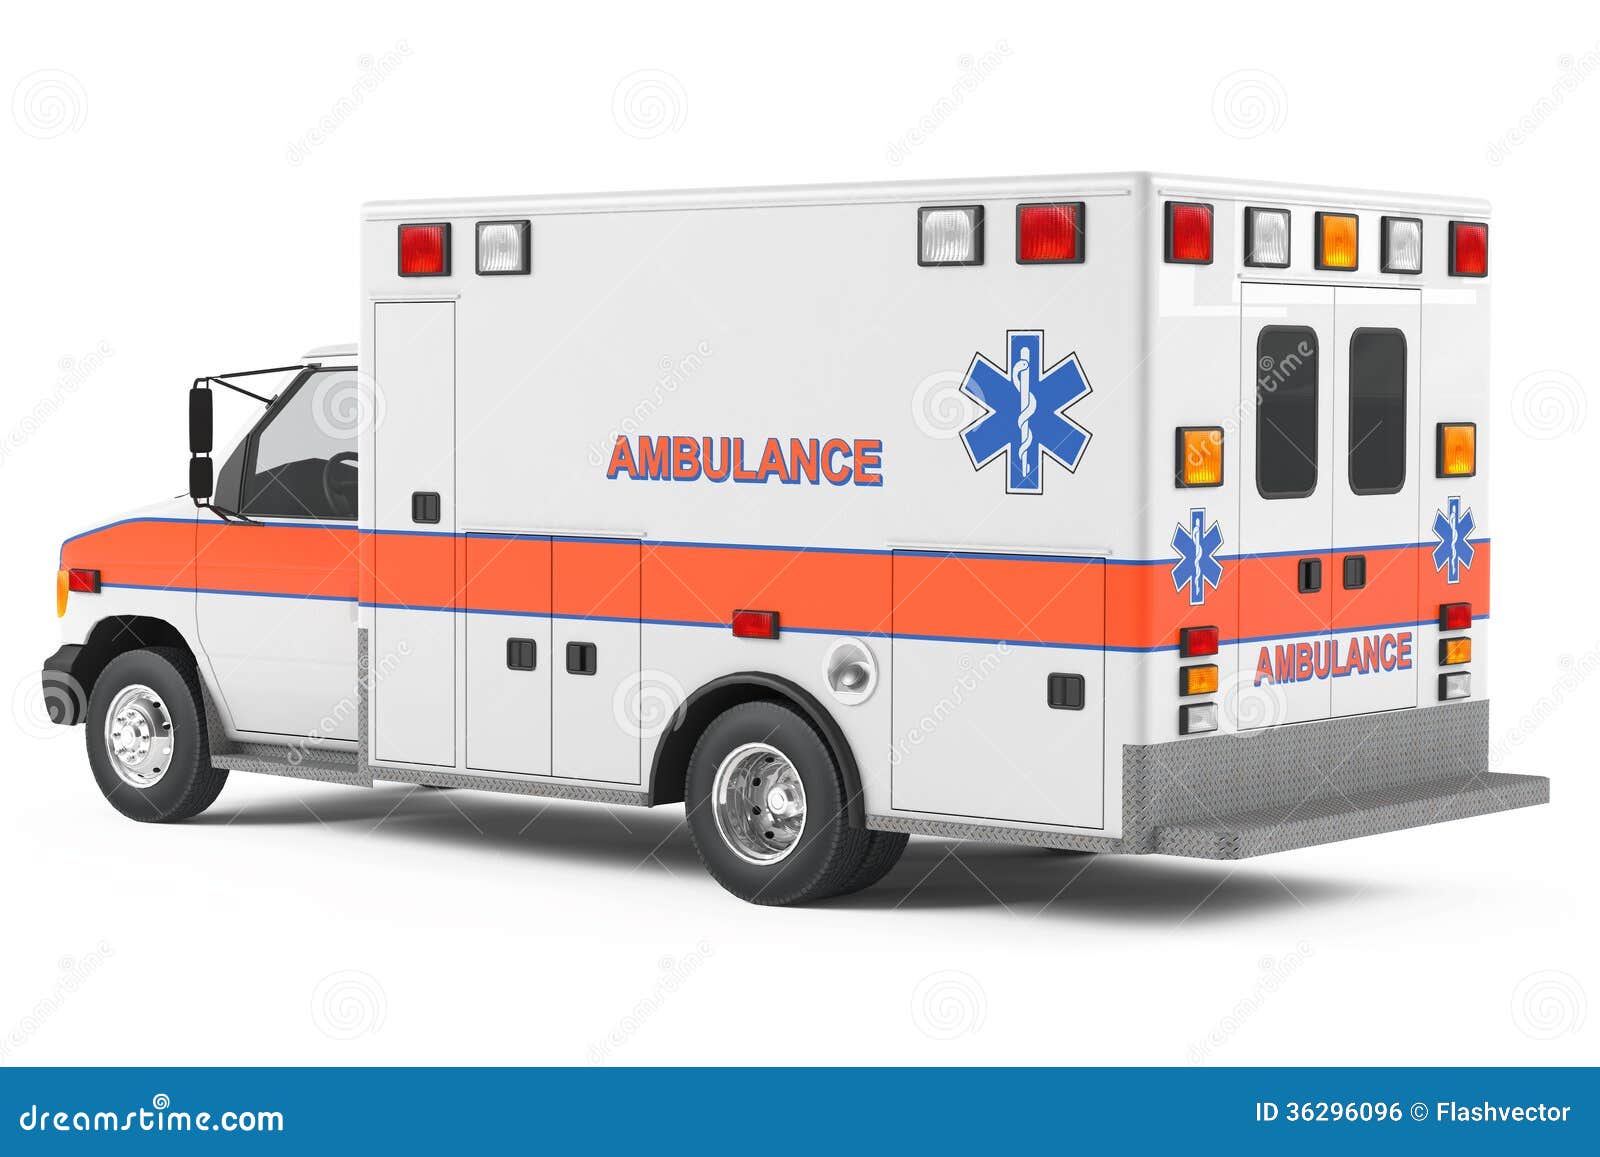 clipart ambulance car - photo #38